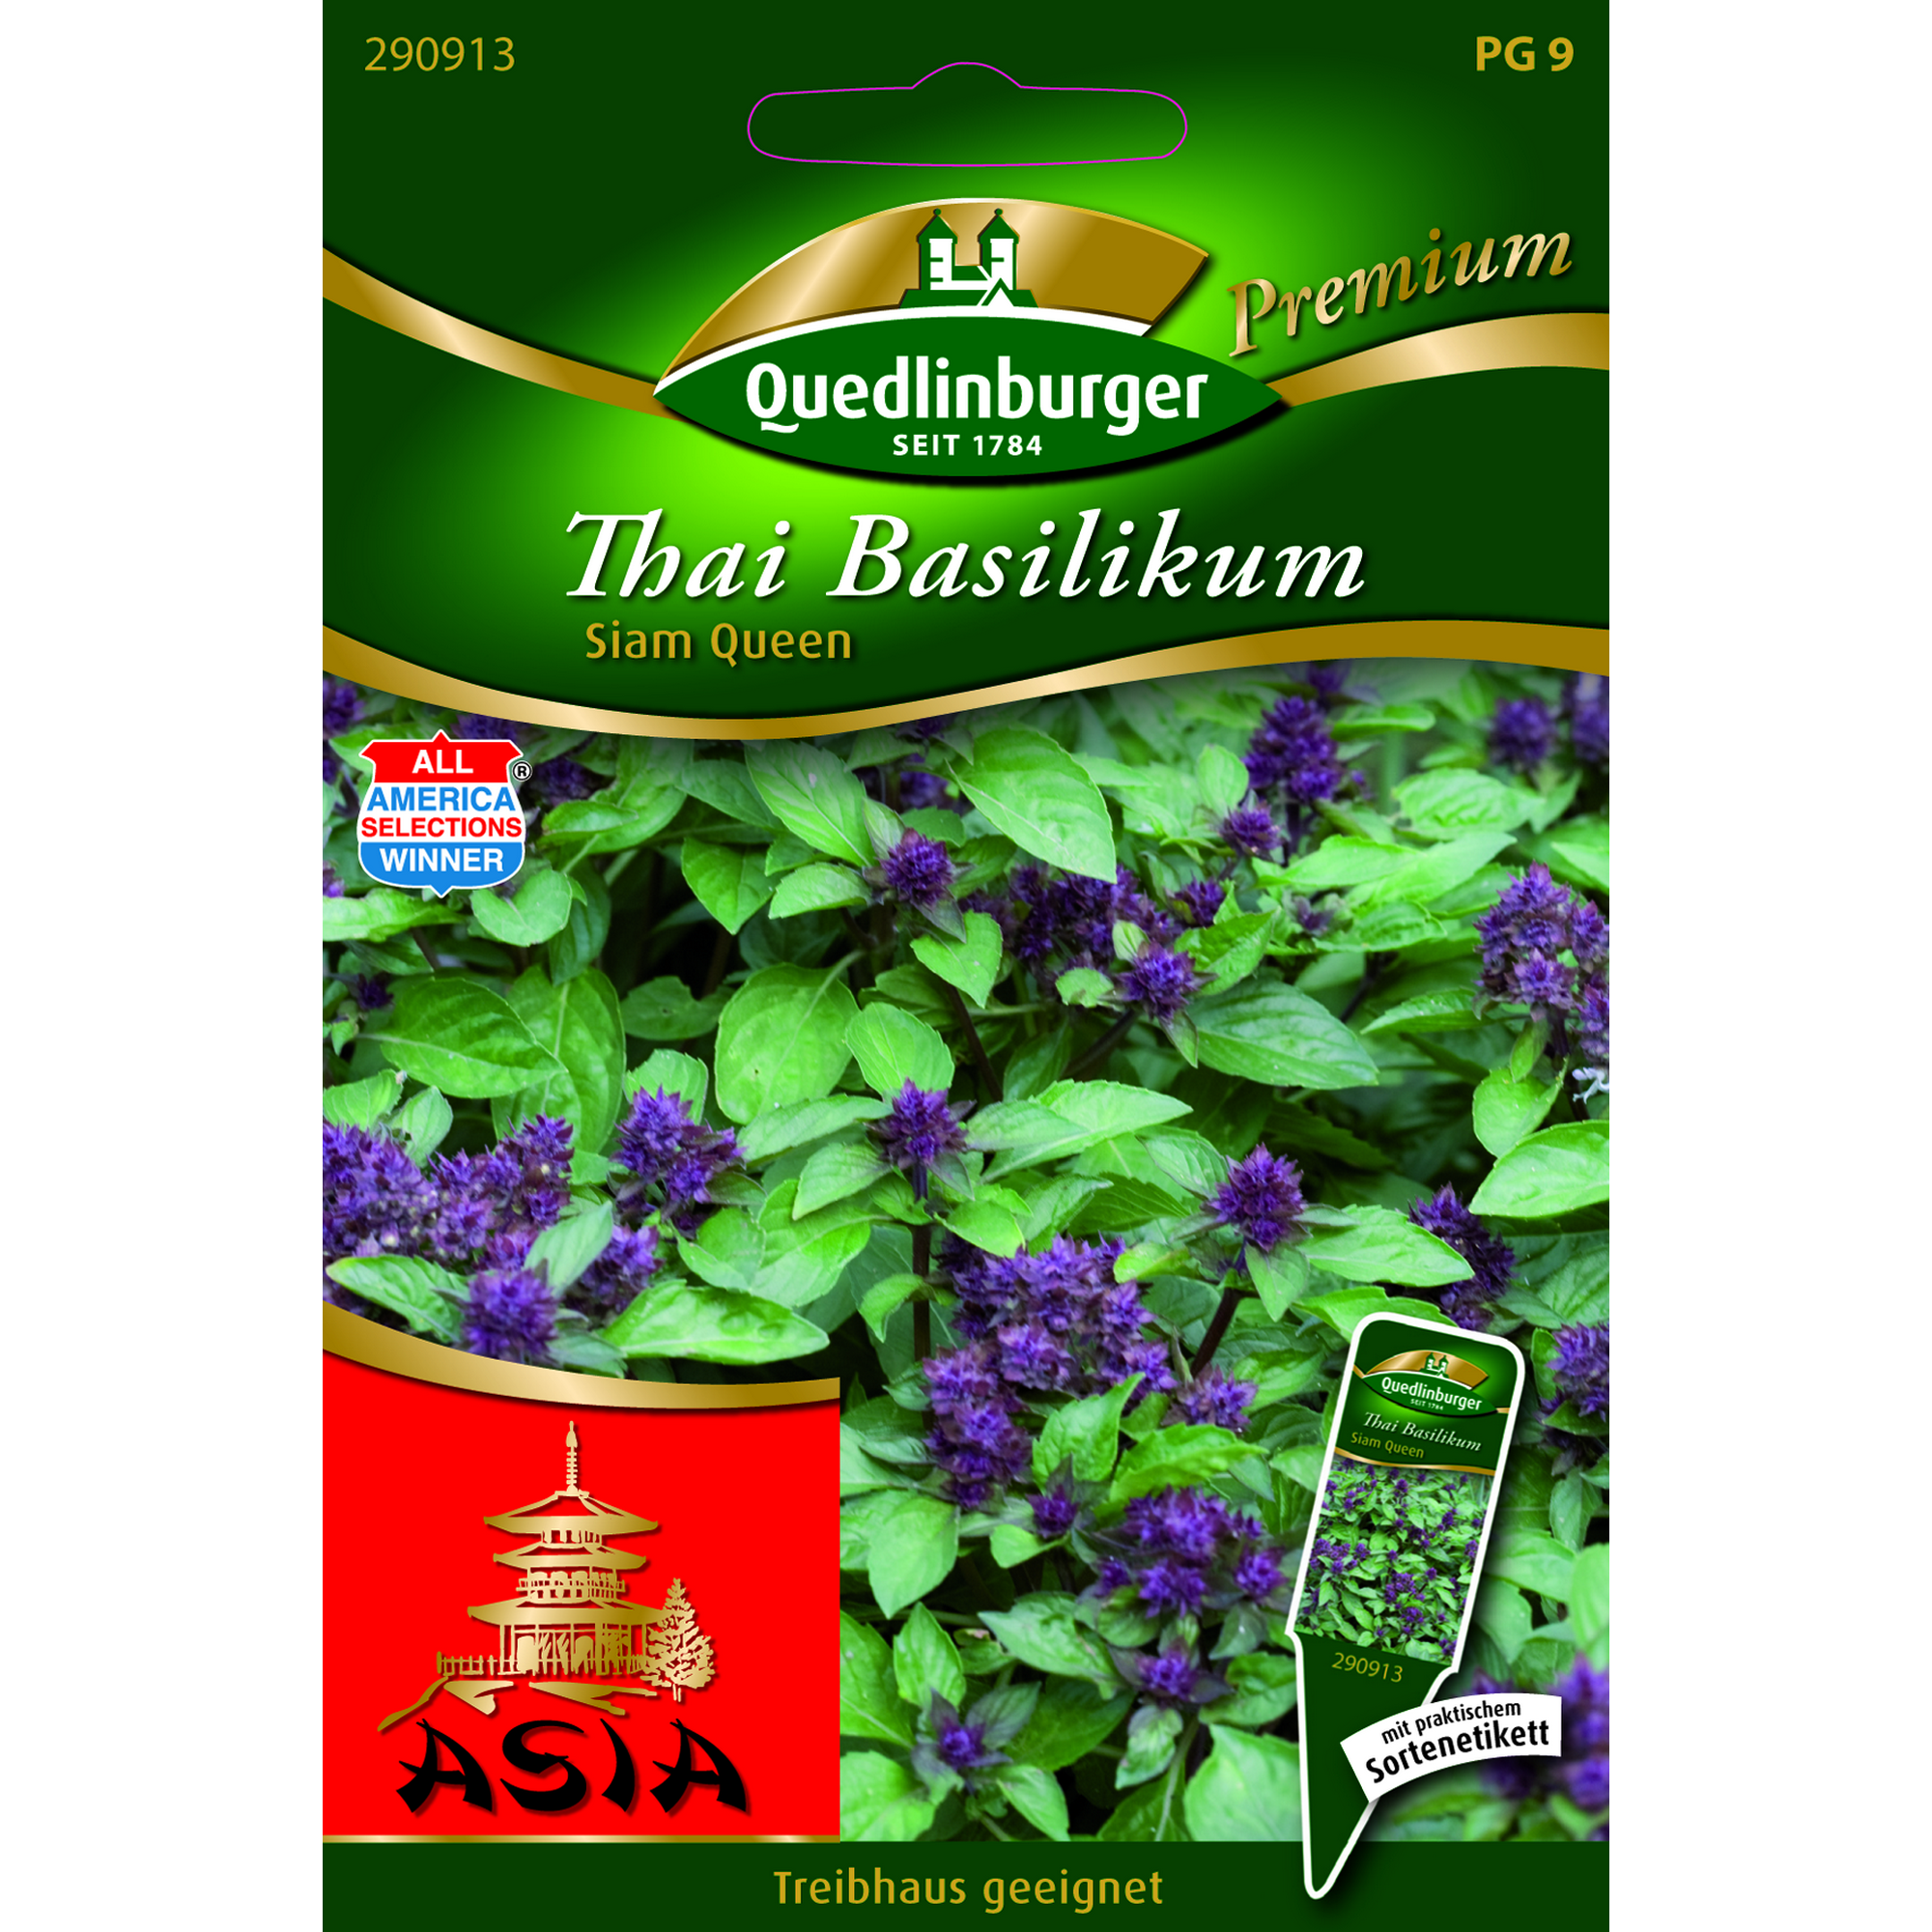 Premium Thai-Basilikum 'Siam Queen' + product picture